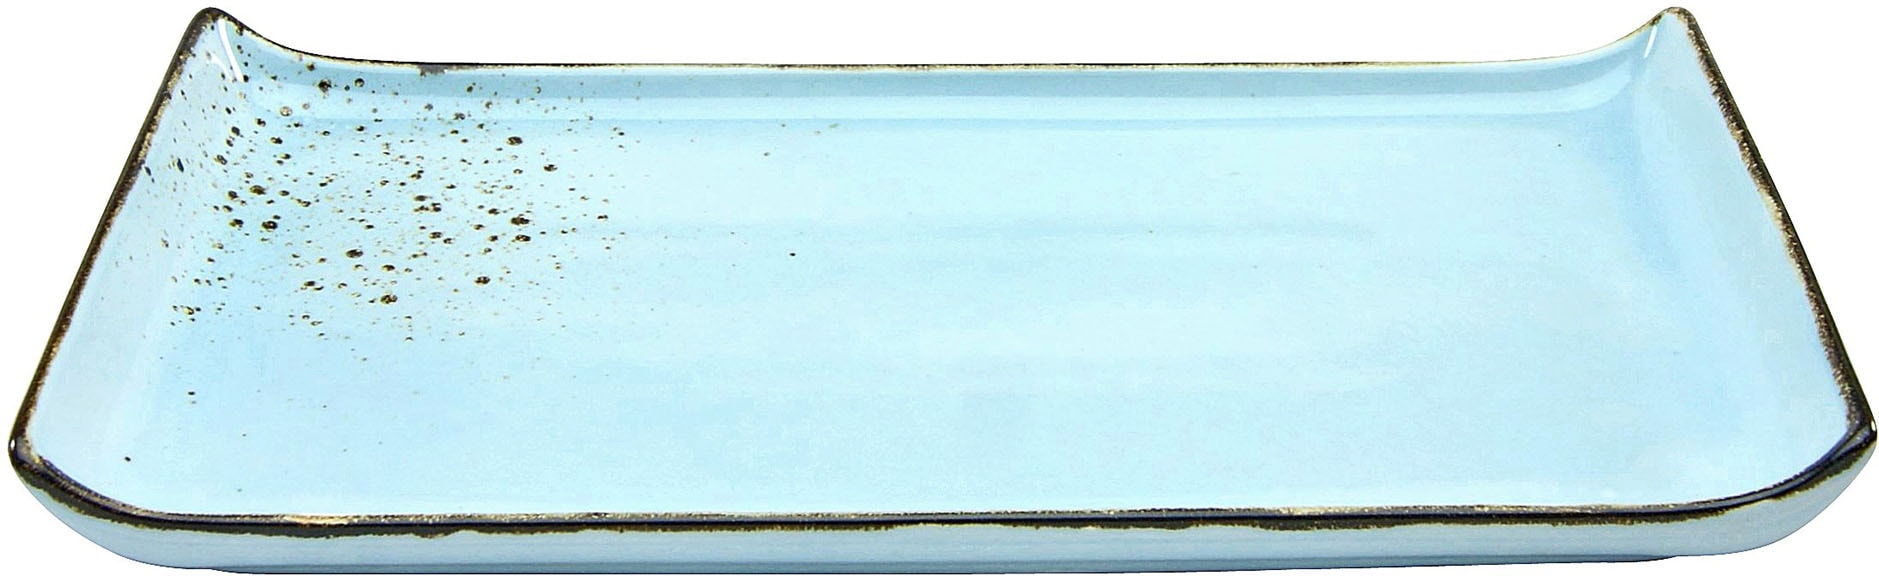 CreaTable Servierplatte »Nature Collection«, (Set, 2 tlg.), Servier Set, 33x16,5 cm